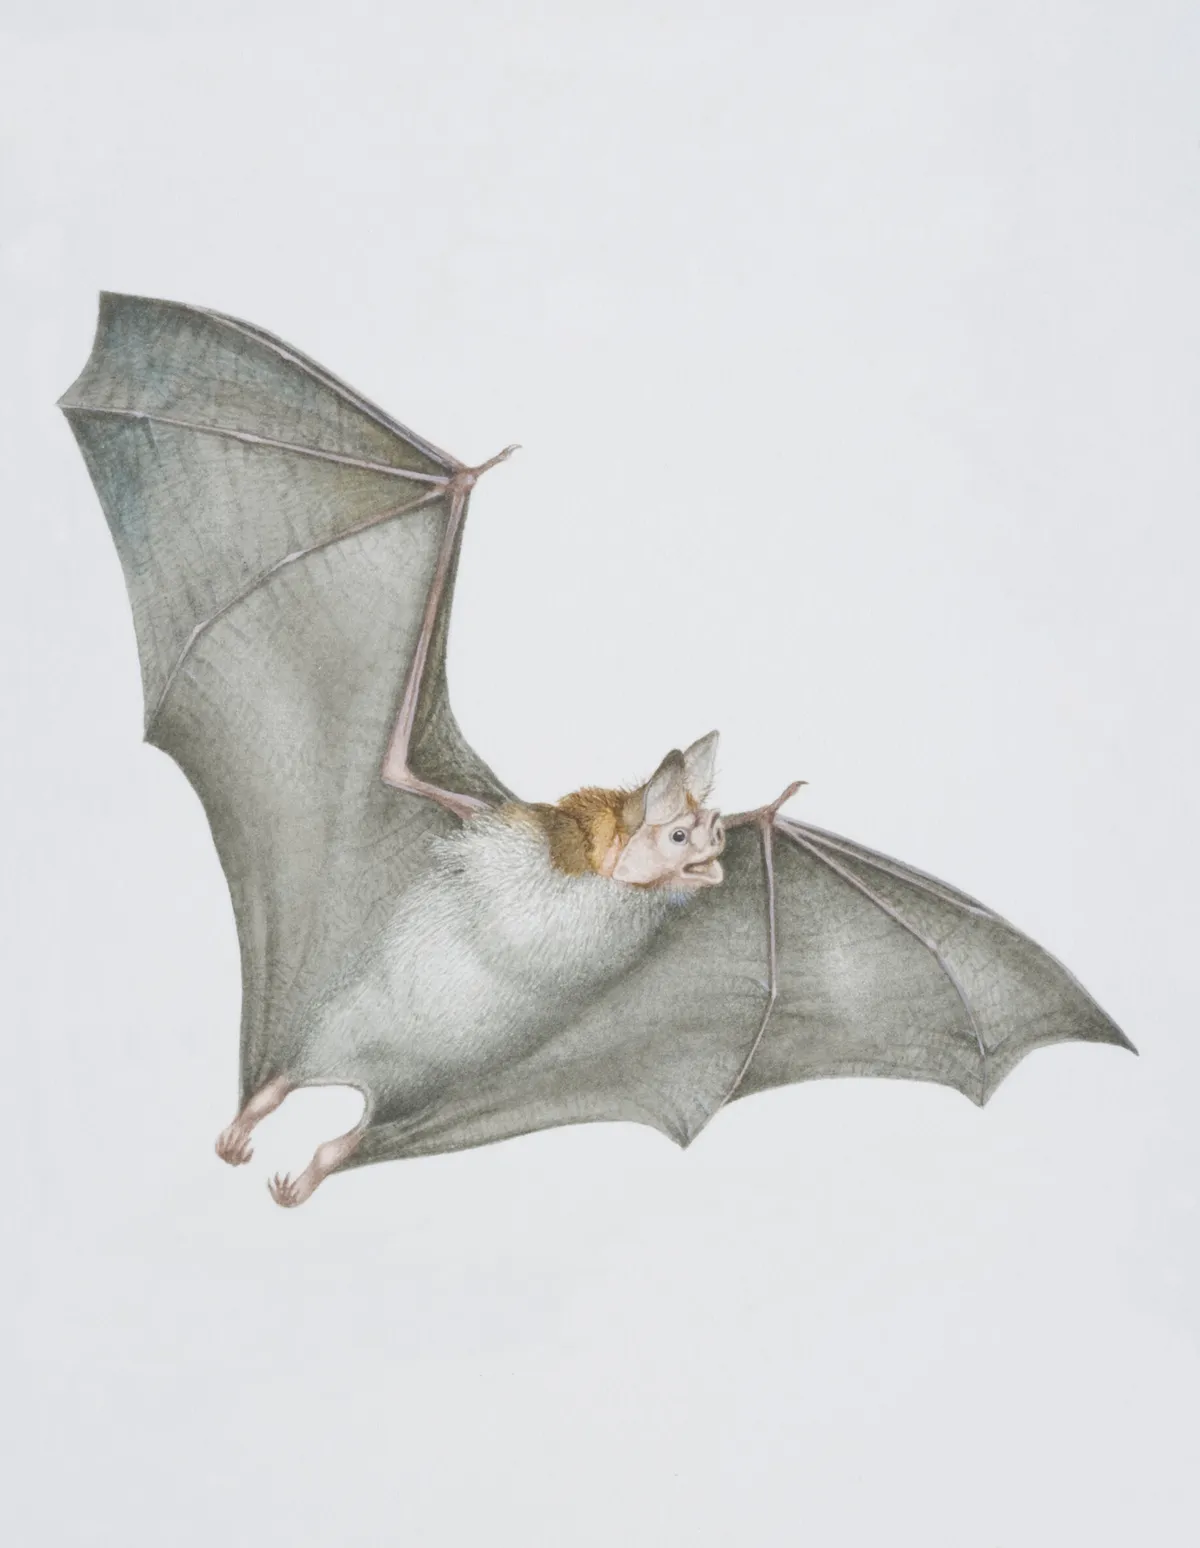 Desmodus rotundus, Vampire Bat in flight.